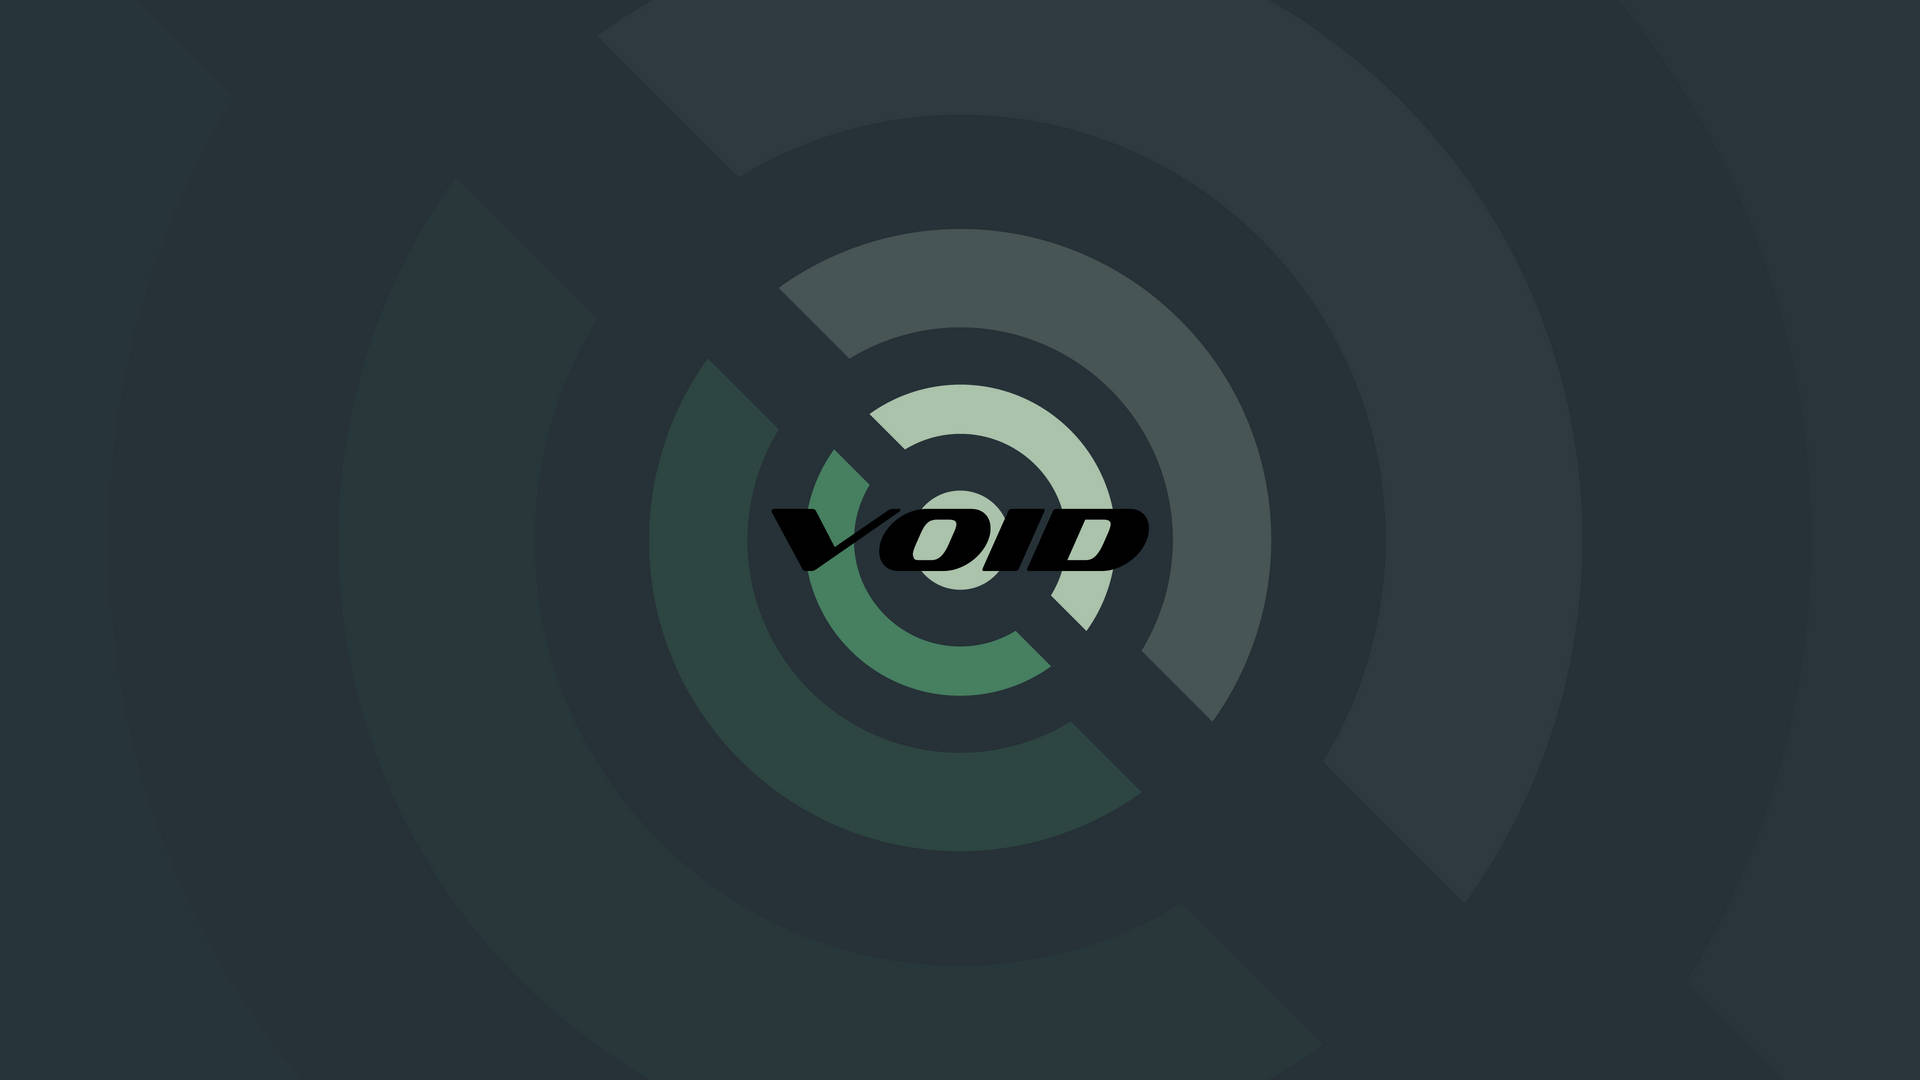 Original Void Linux Logo Background